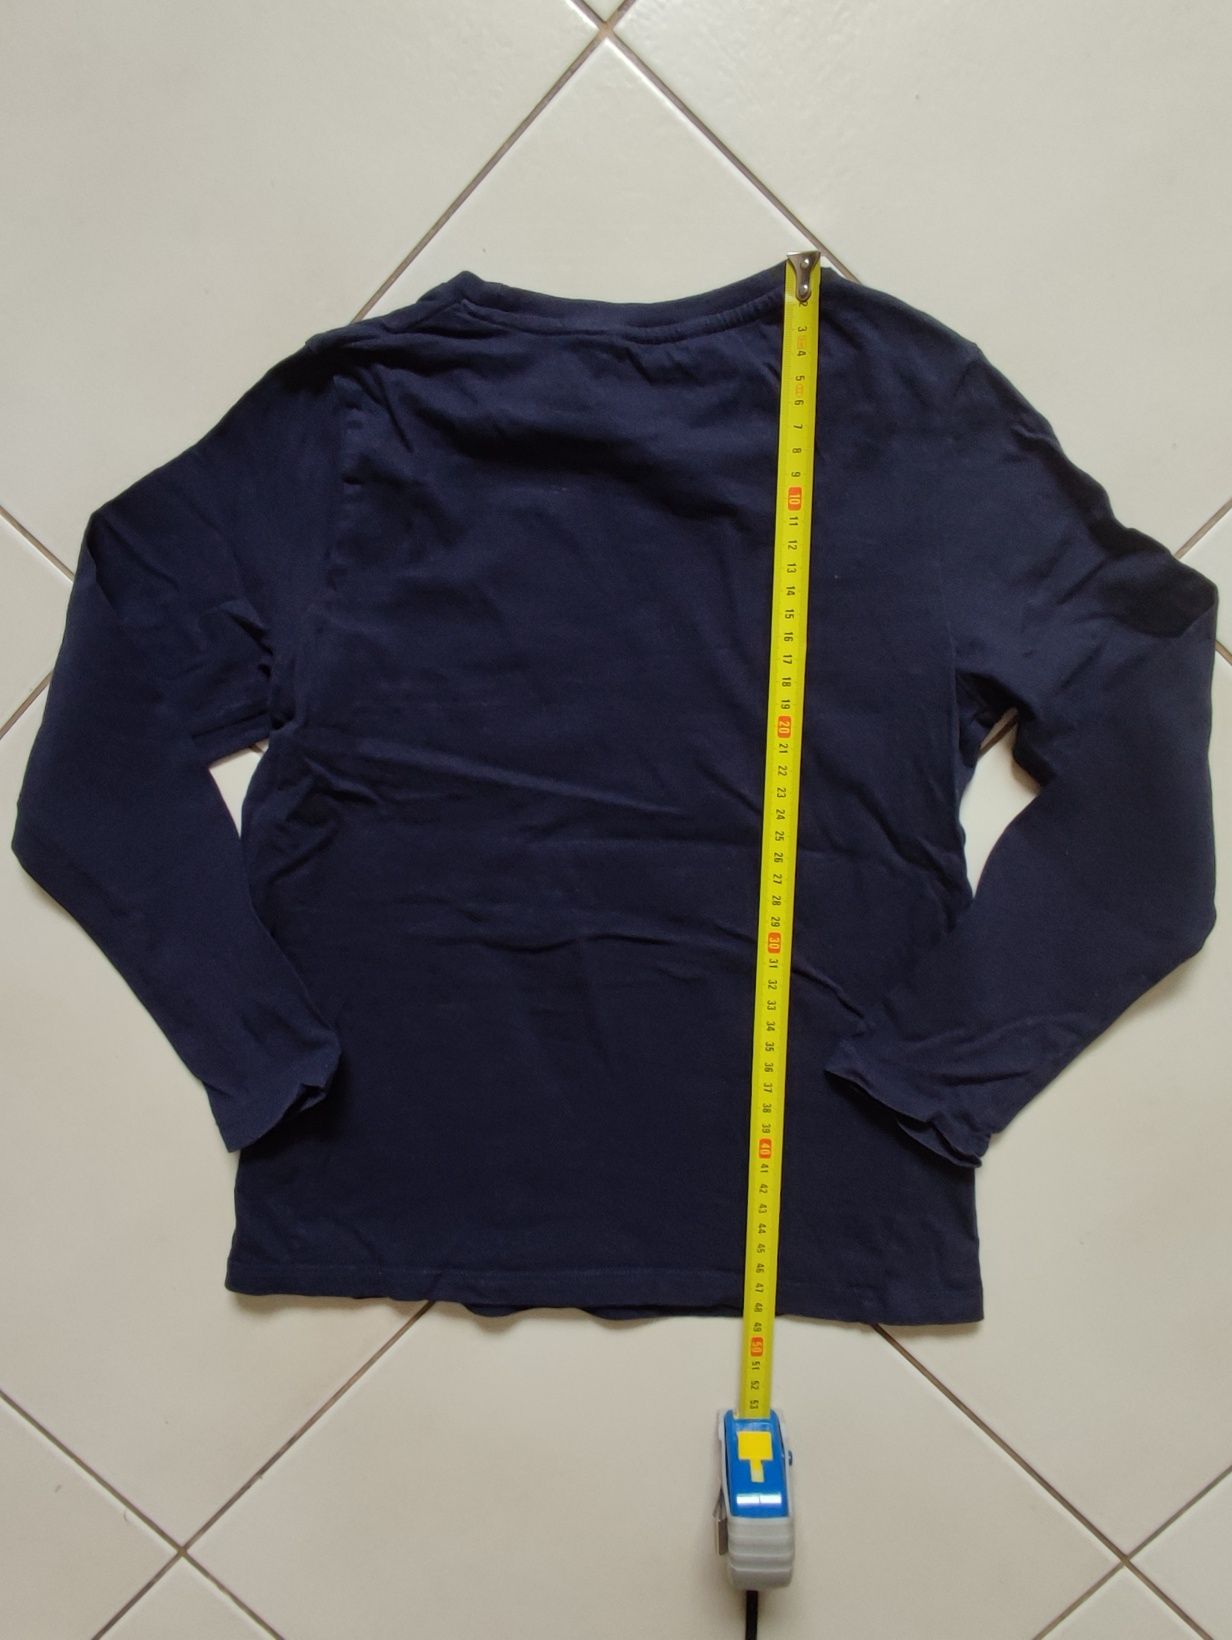 Bluza, t-shirt, bluzka chłopięca firmy Pepco rozmiar 122/128